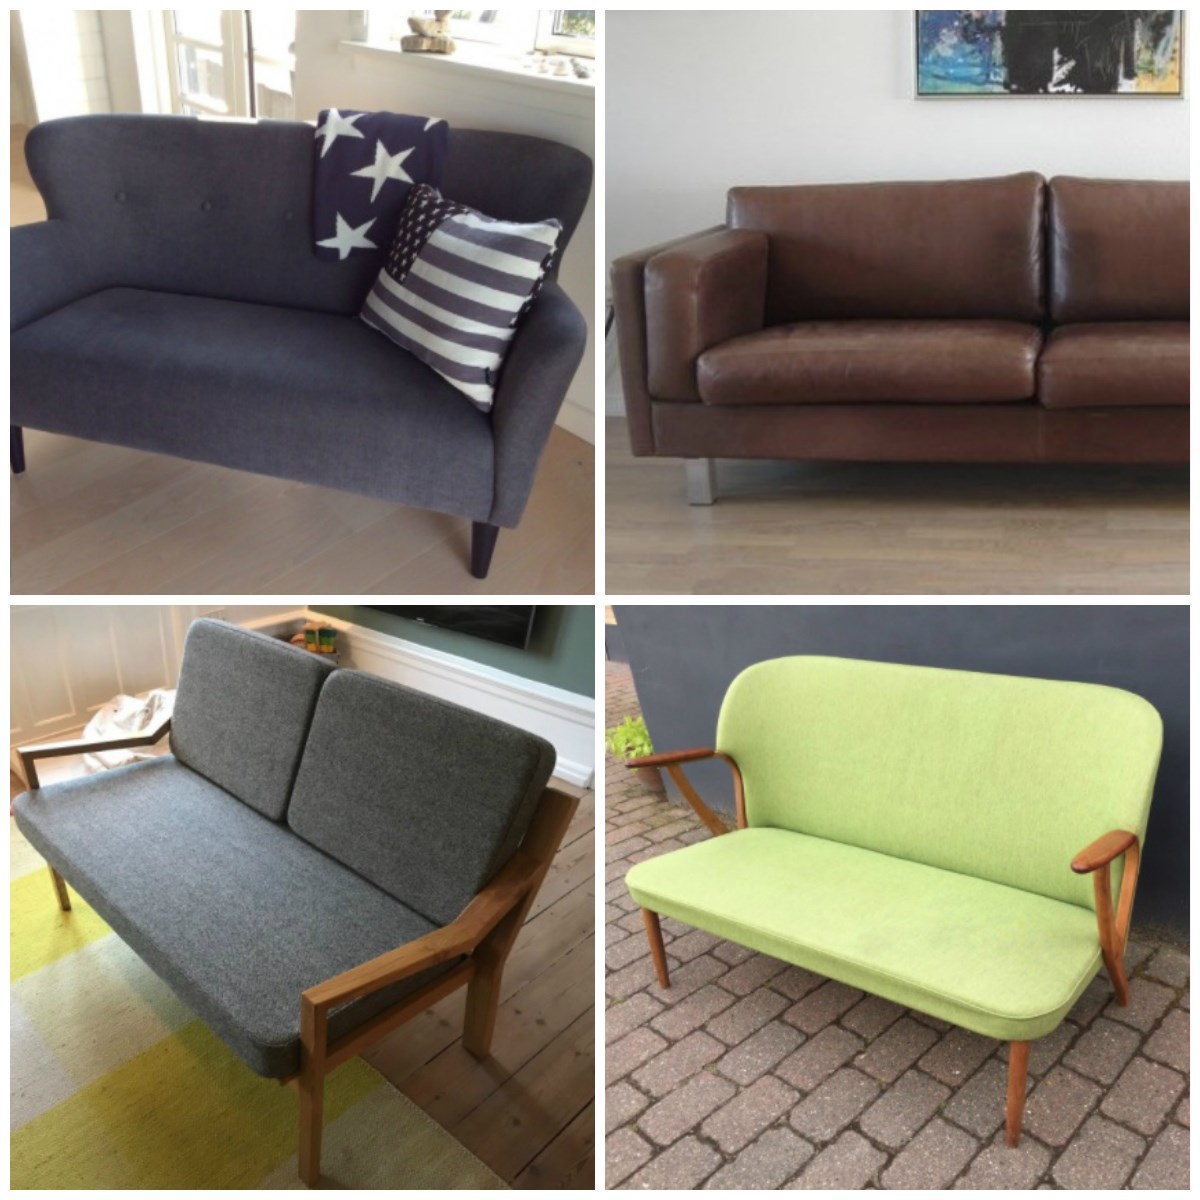 Her er fire designer-sofaer, som lige nu er til salg på DBA. Den mørkeblå er sat til salg af Camilla fra Jægerspris for 15.000 kroner. Det er en Wendelbo-sofa. Lædersofaen er en Morgens Hansen-sofa, som Brian fra Asaa har til salg for 9.000 kroner. Du skal punge ud med 4.000 kroner, hvis du vil have fat i den grå sofa, som Jonas fra Frederiksberg har til salg, mens den grønne ”kun” koster 3.800 kroner. Den har Nicole fra Randers valgt at sælge på DBA